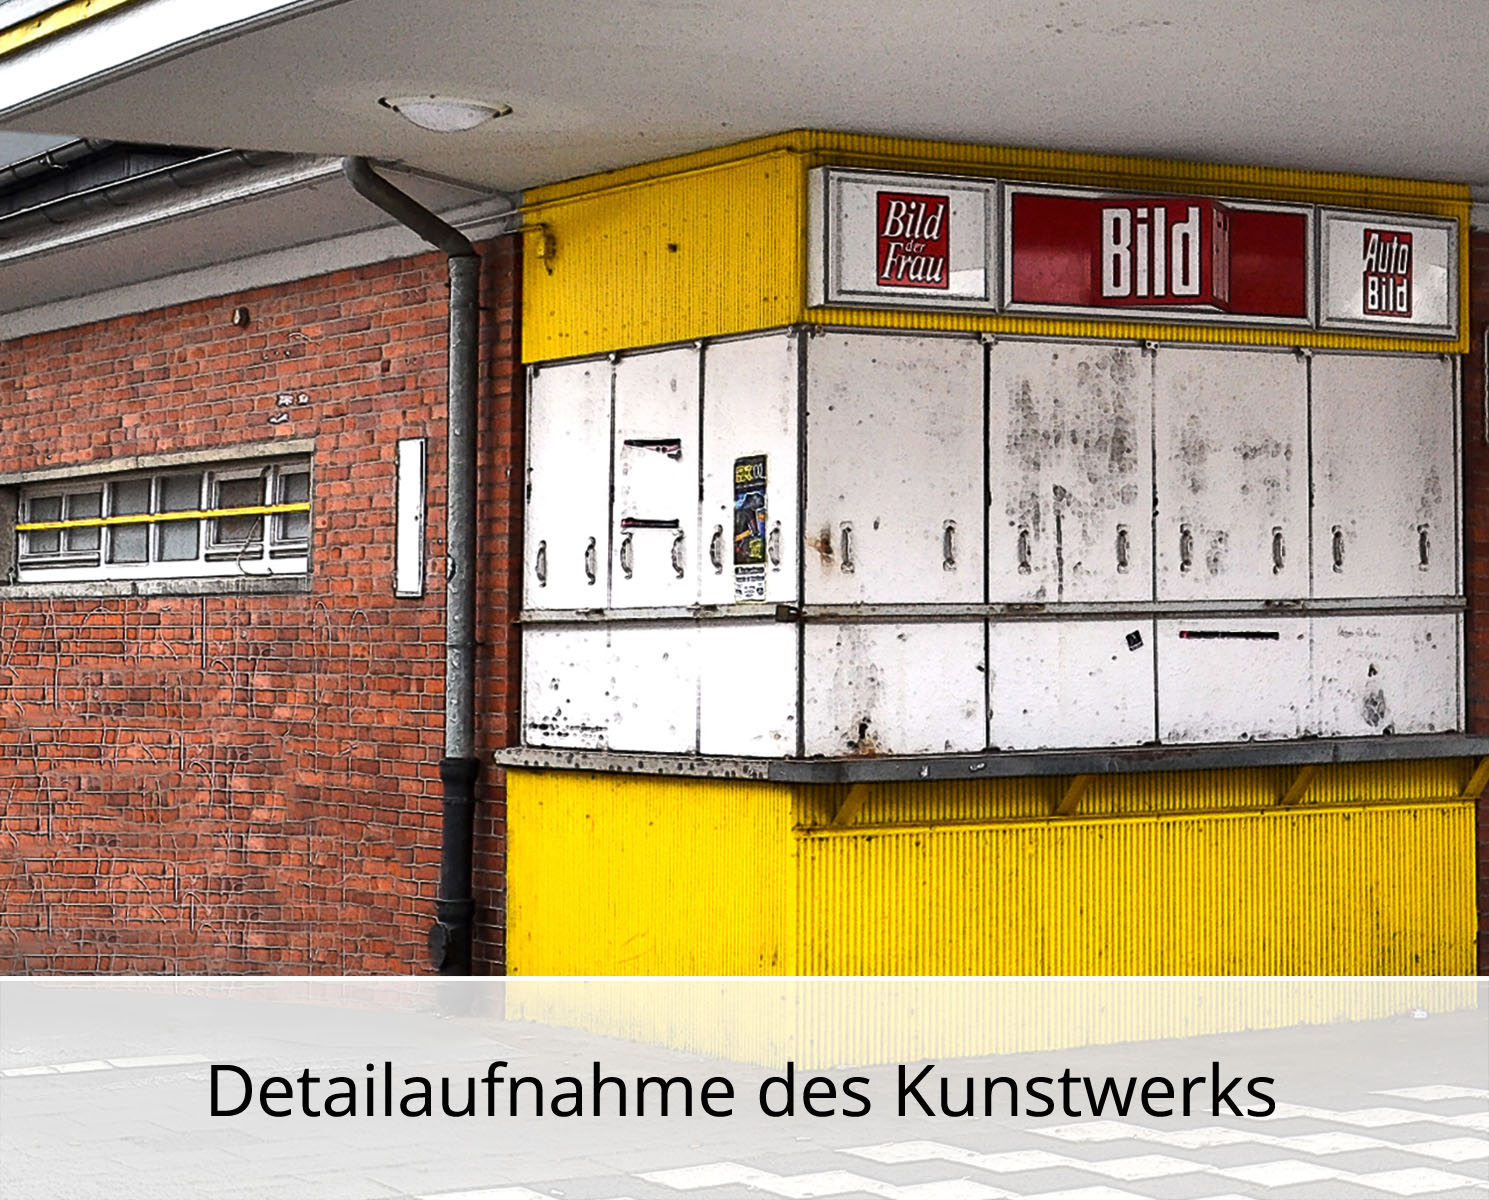 H. Mühlbauer-Gardemin: "Der letzte Kiosk", Zeitgenössische Digitalkunst, Edition